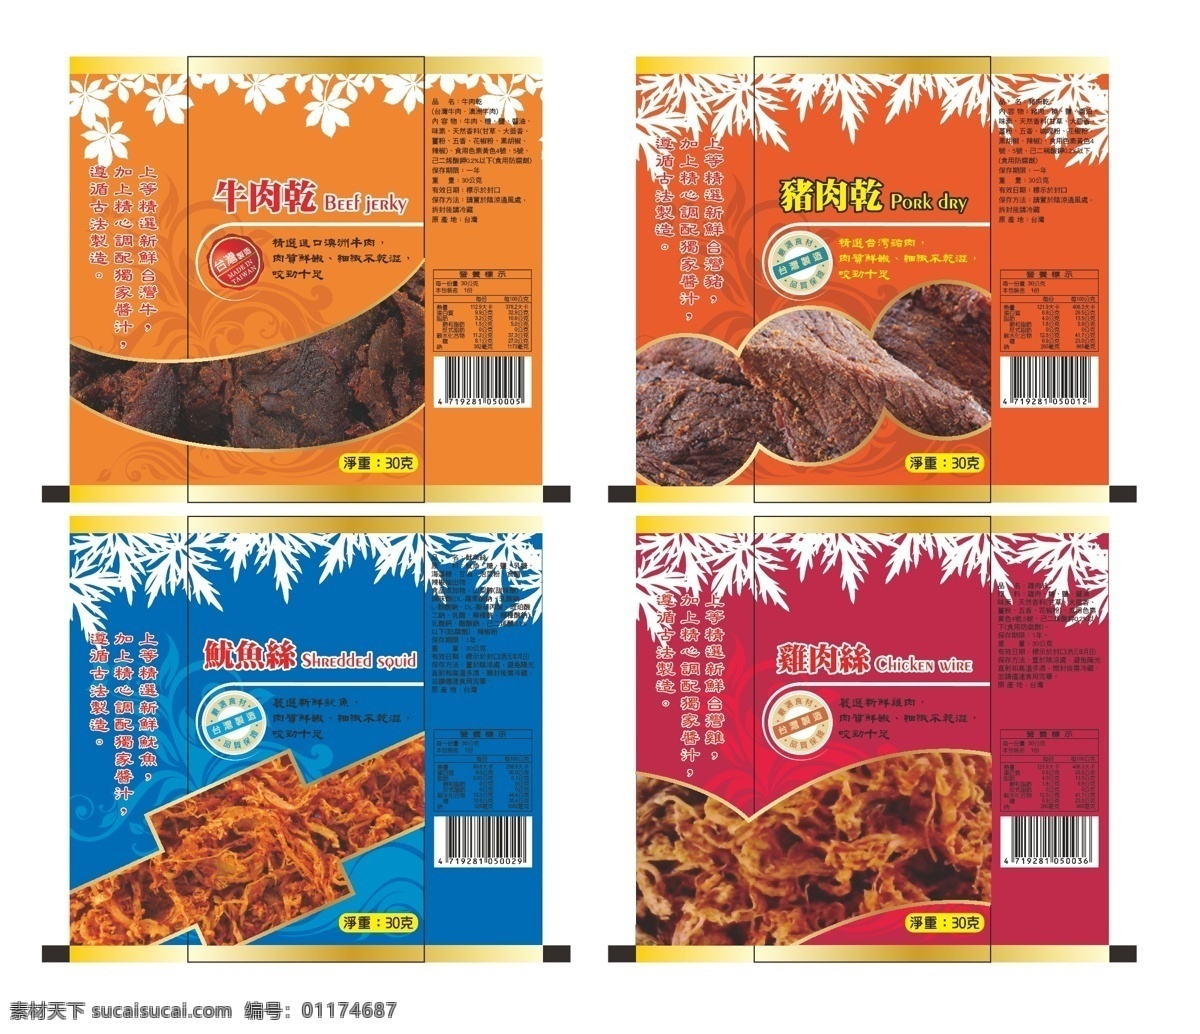 牛肉干 包装 包装设计 广告设计模板 卡通牛头 牛肉干包装 食品包装 源文件 白色